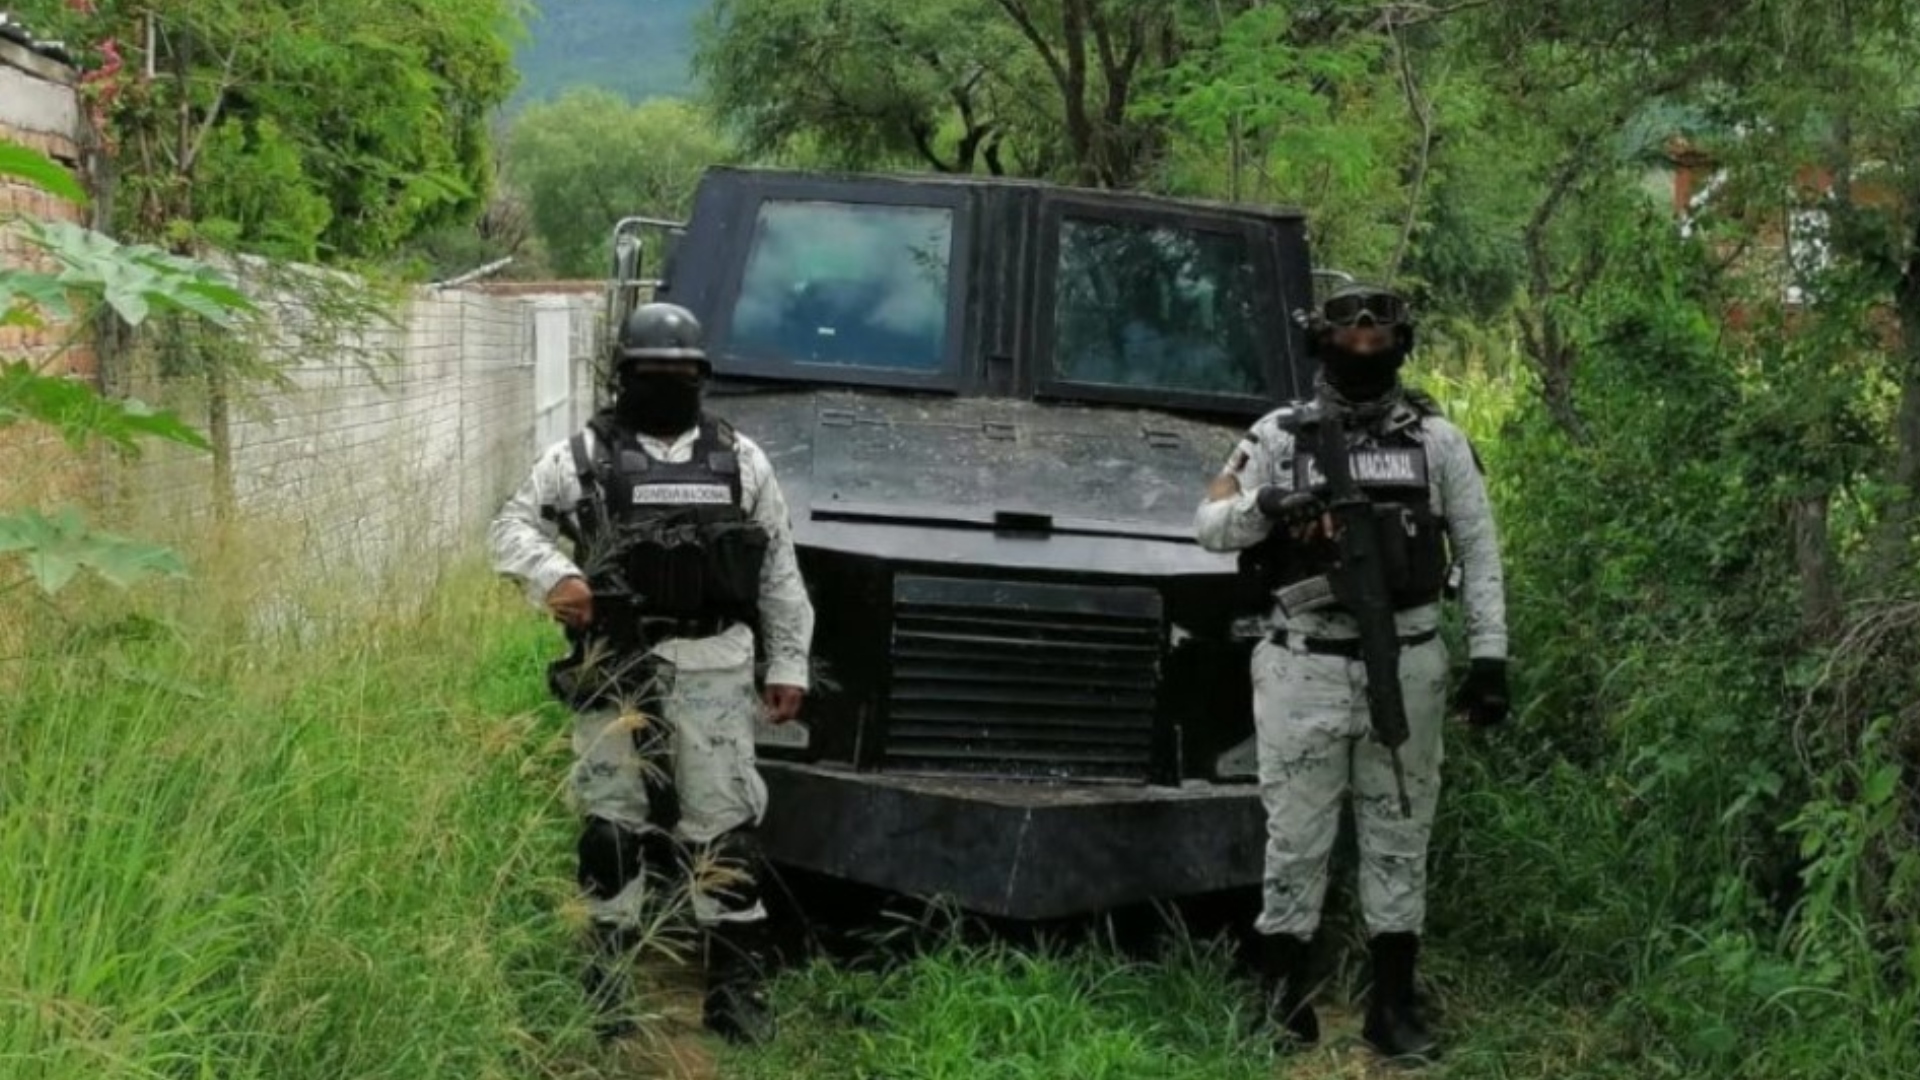 Guardia Nacional encontró un “monstruo” abandonado en el estado de Zacatecas